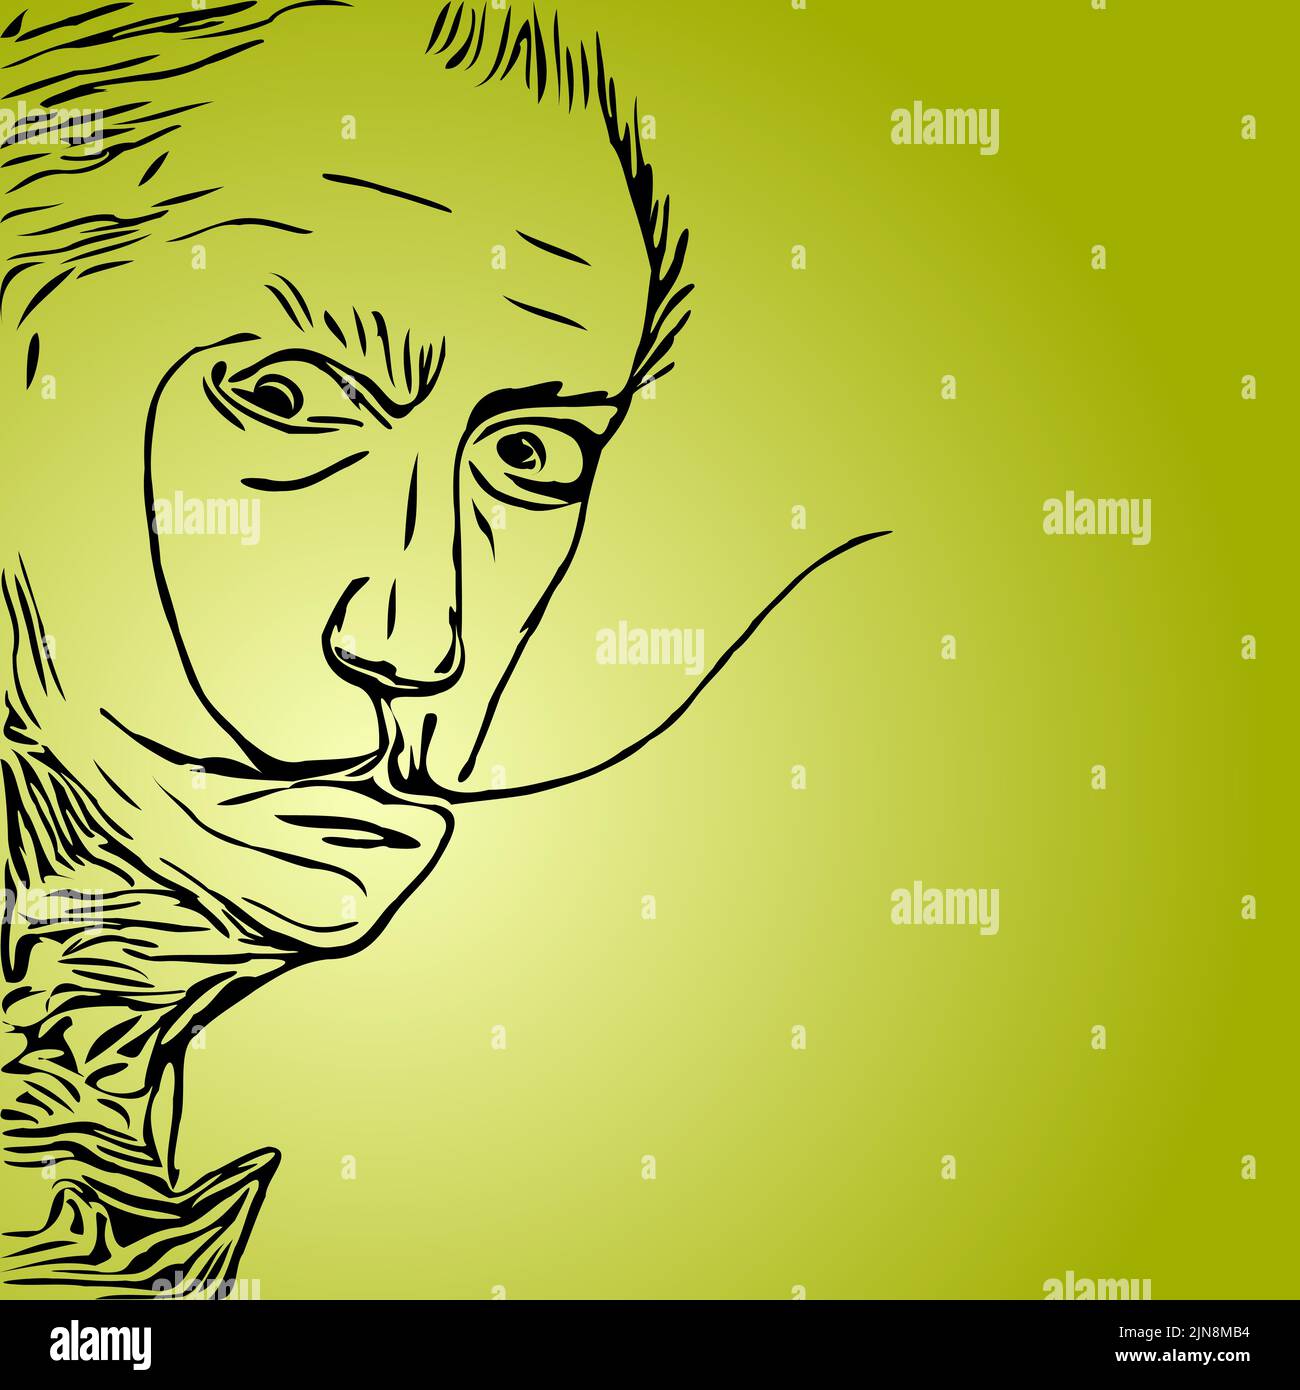 El retrato de estilo de dibujos animados de Salvador Dalí sobre el fondo verde Ilustración del Vector